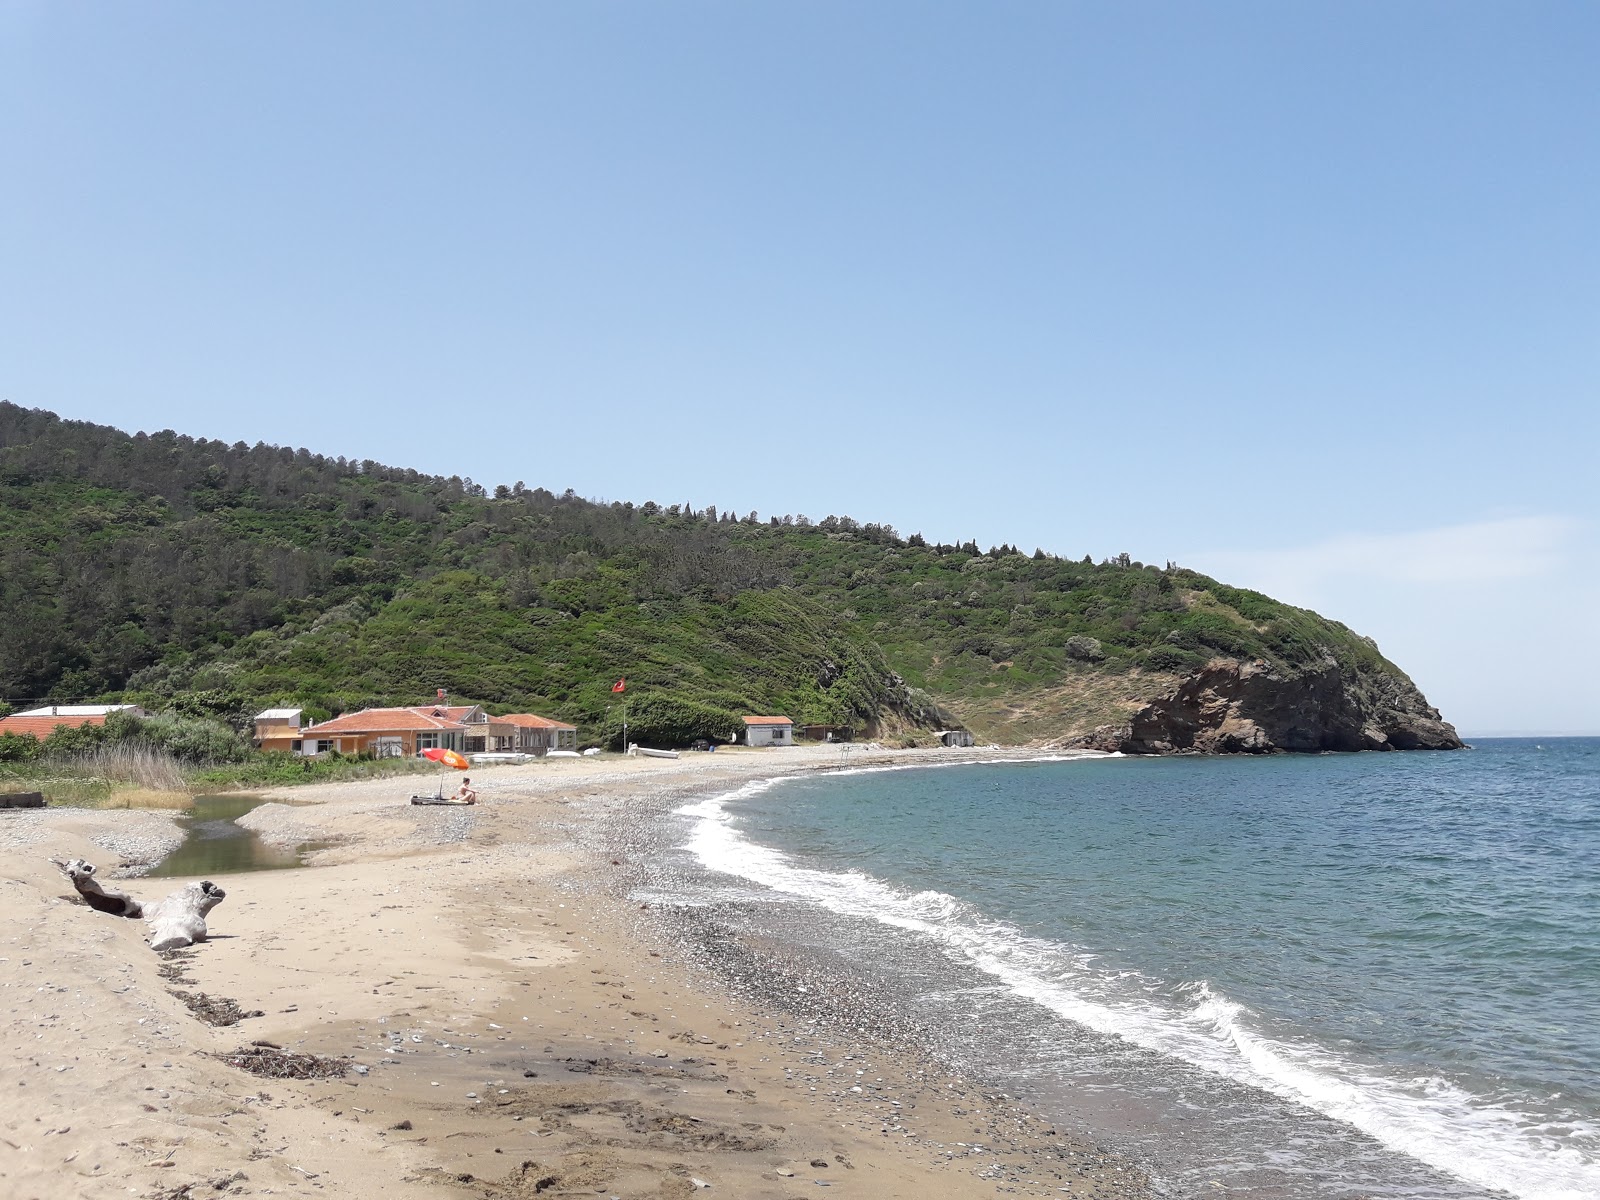 Zdjęcie Gureci beach z powierzchnią piasek z kamykami